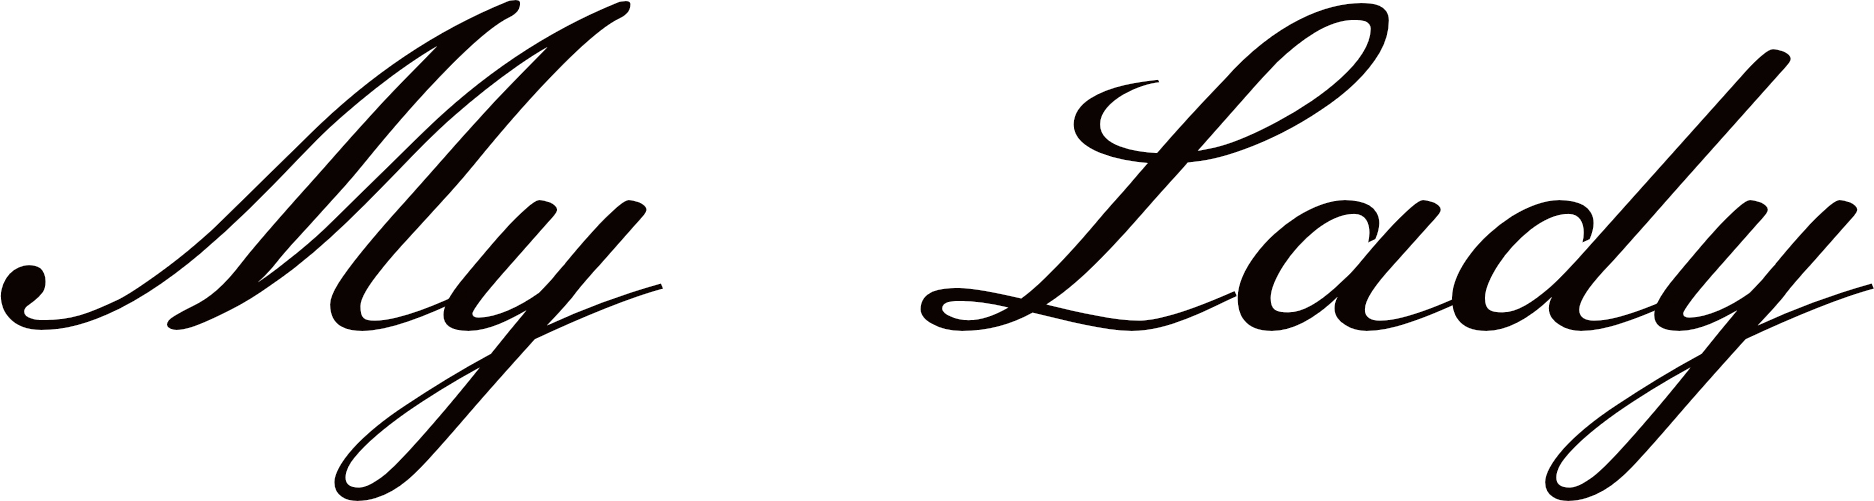 40, 2 April 2017 - My Lady Logo (1874x501)